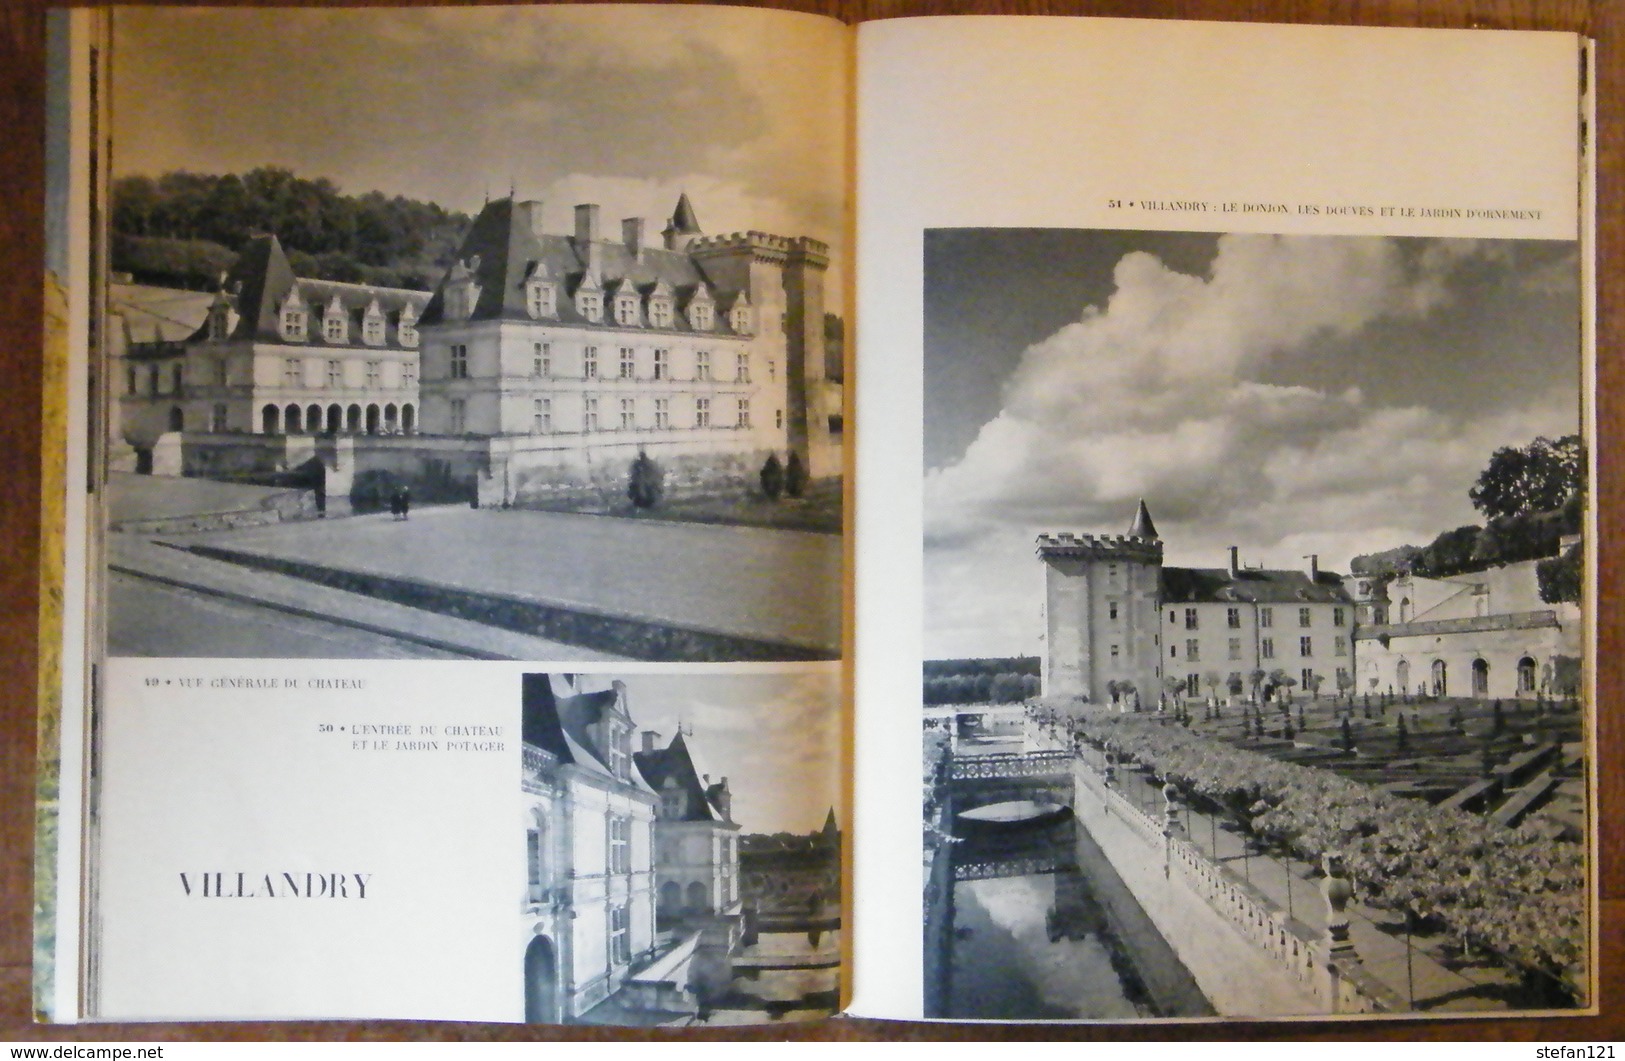 Chateaux De La Loire - Photographies De Jean Roubier - 1953 - 78 Pages 29,2 X 22,8 Cm - Pays De Loire